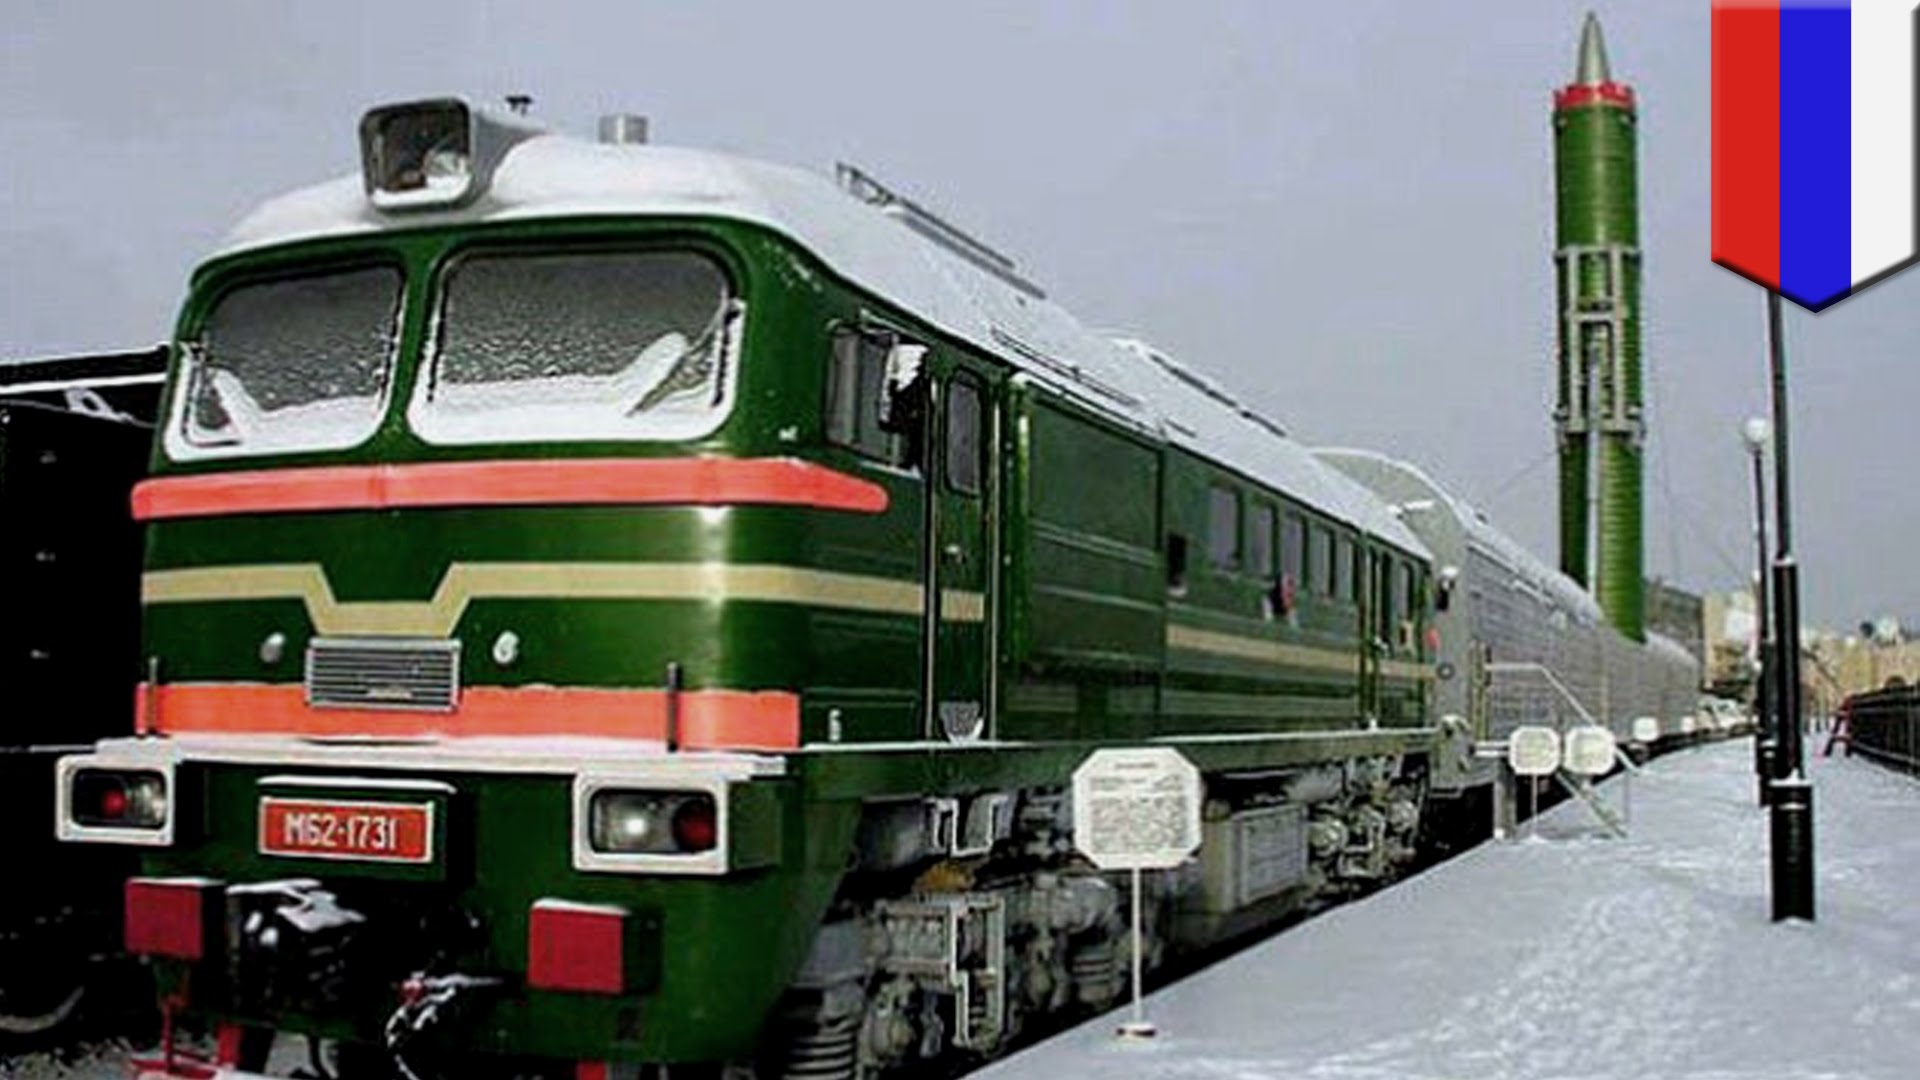 Εναρξη κατασκευής για τα ρωσικά διηπειρωτικά βαλλιστικά συστήματα επί τρένων